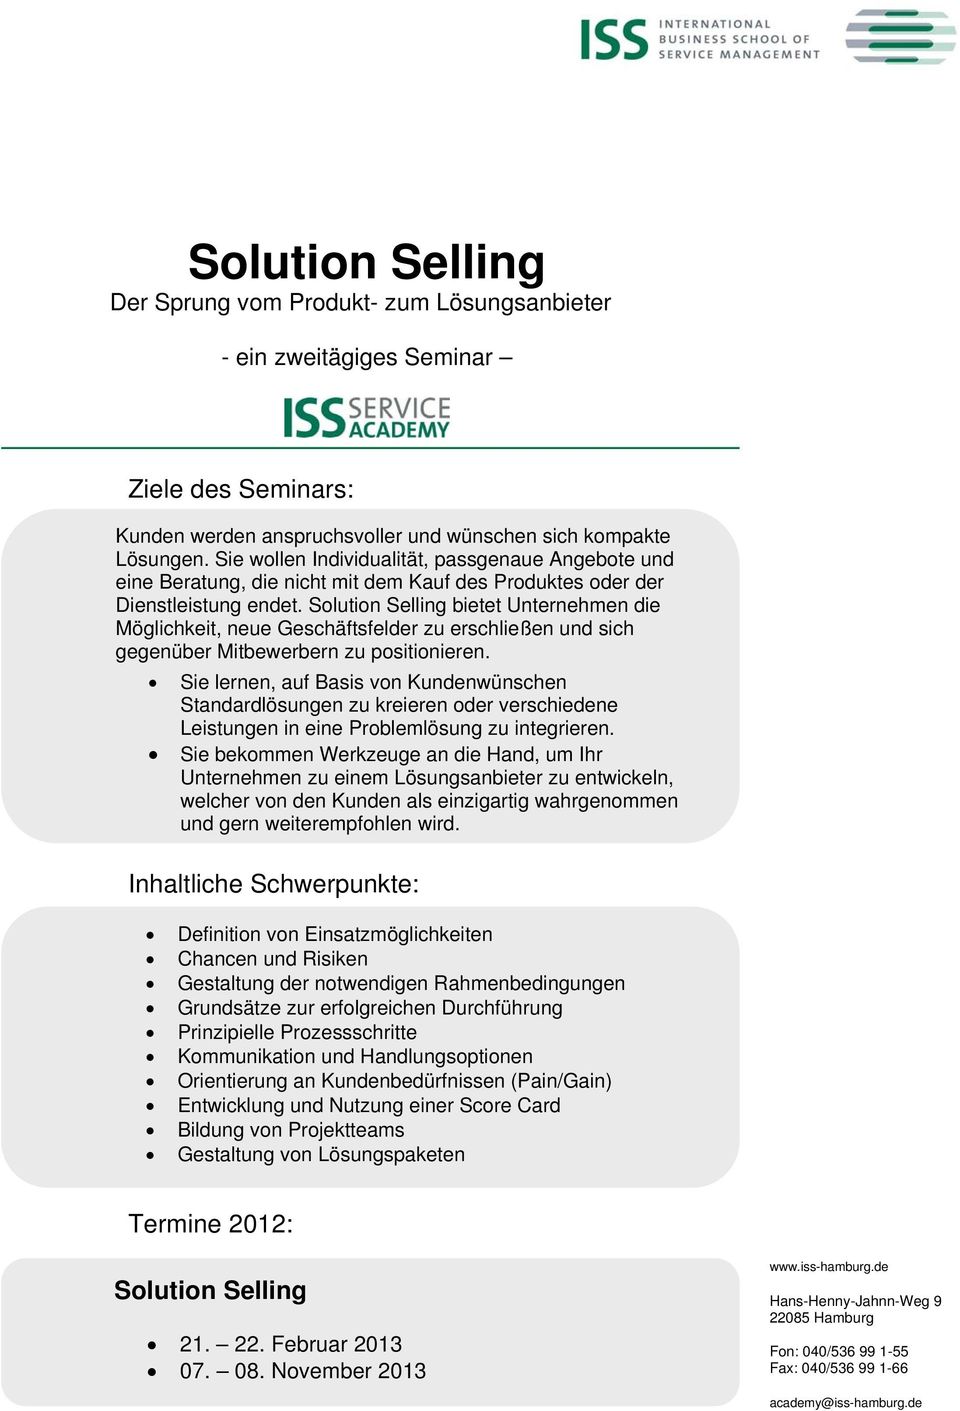 Solution Selling bietet Unternehmen die Möglichkeit, neue Geschäftsfelder zu erschließen und sich gegenüber Mitbewerbern zu positionieren.